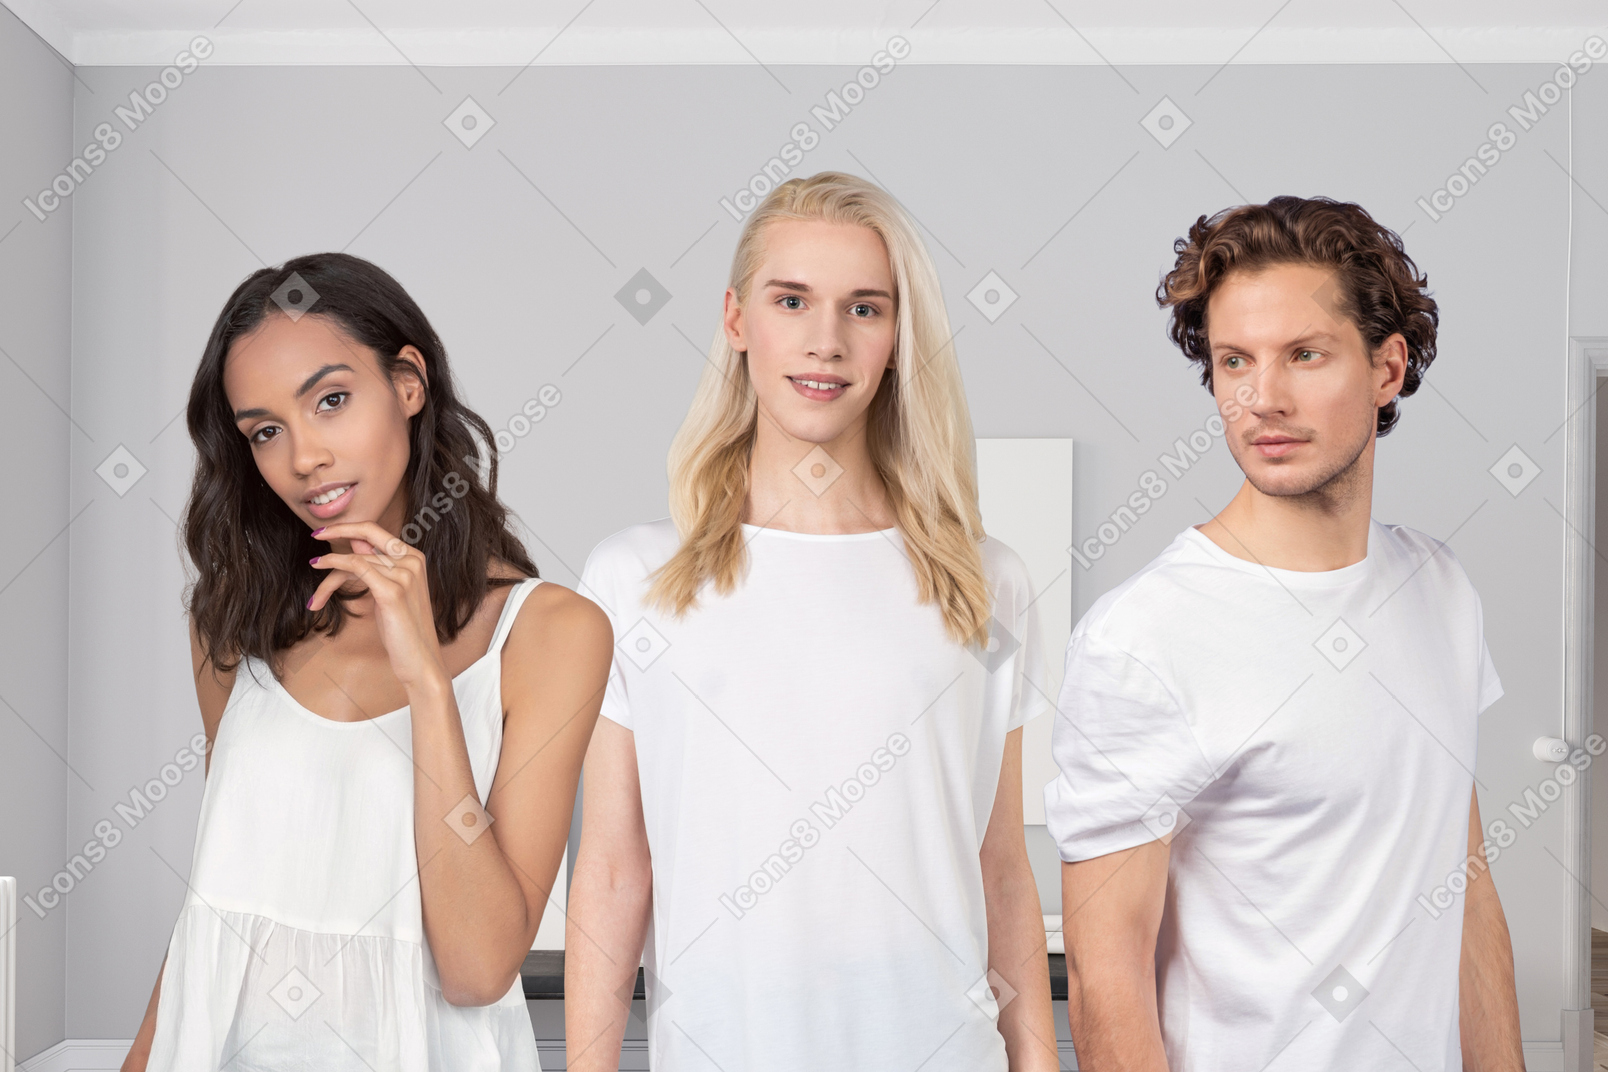 Trois personnes en vêtements blancs debout dans une pièce